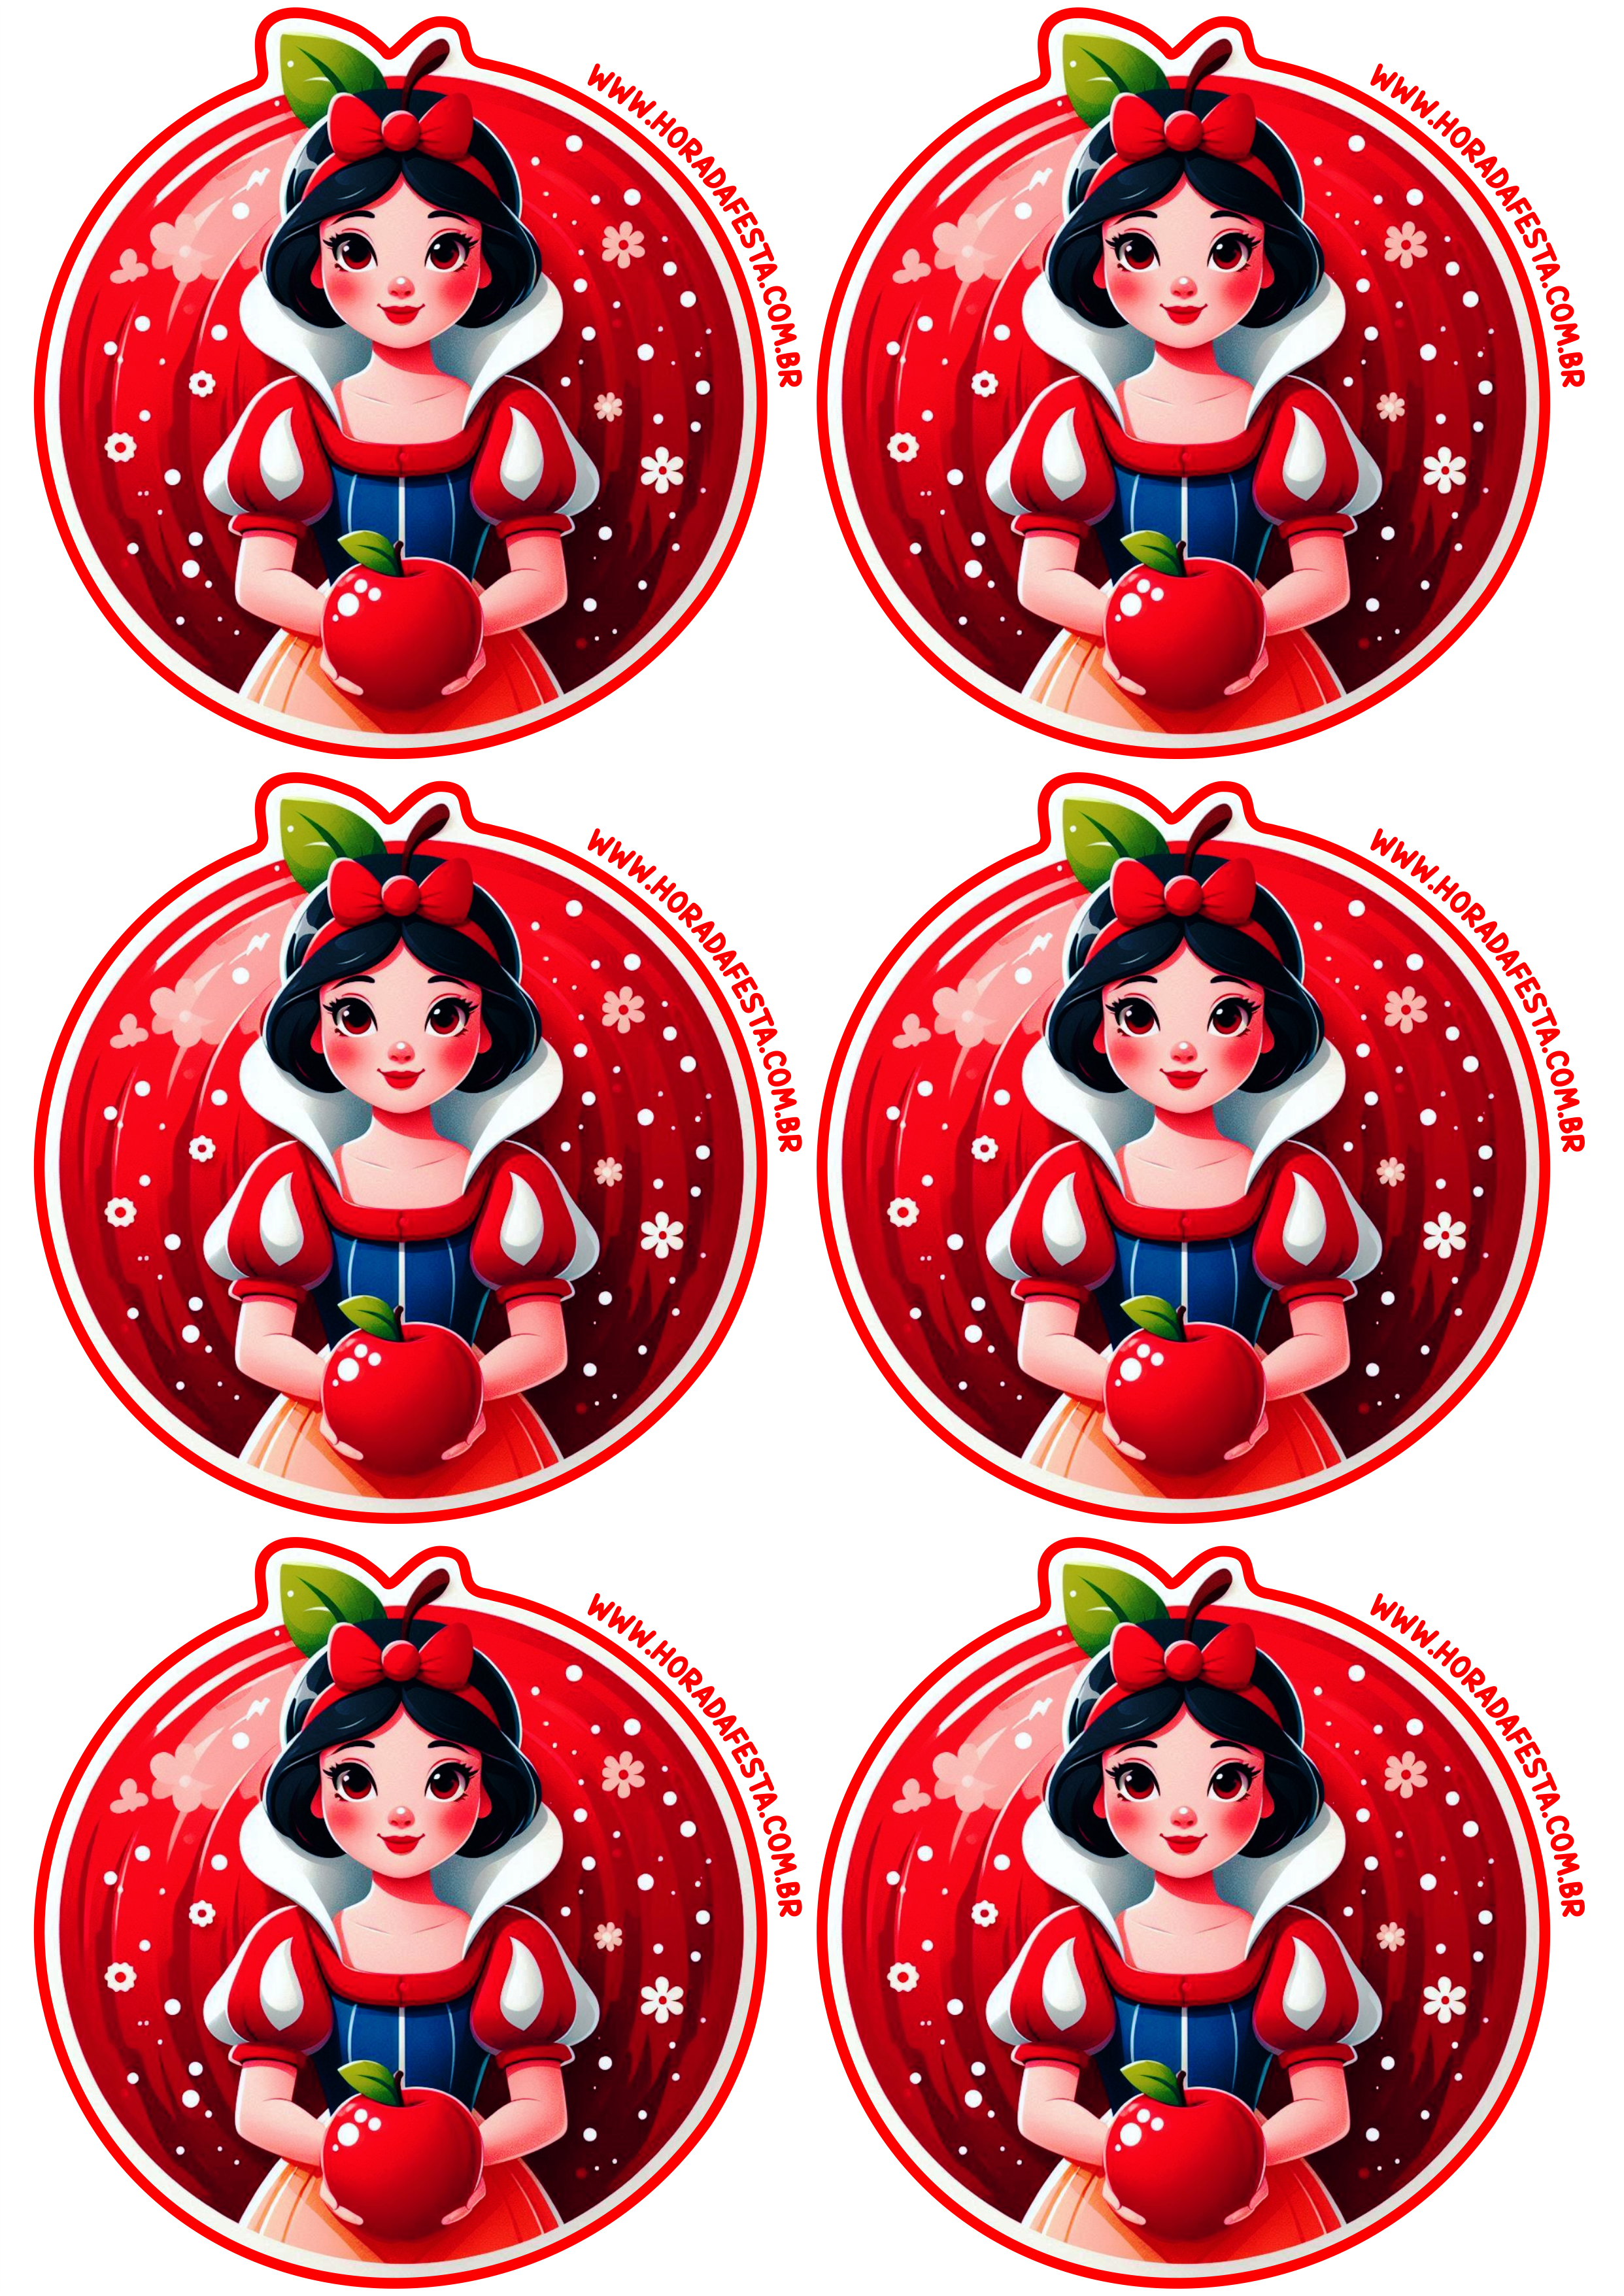 Aniversário infantil adesivo tag sticker Branca de neve Disney pronto para imprimir recortar e decorar sua festa 6 imagens png